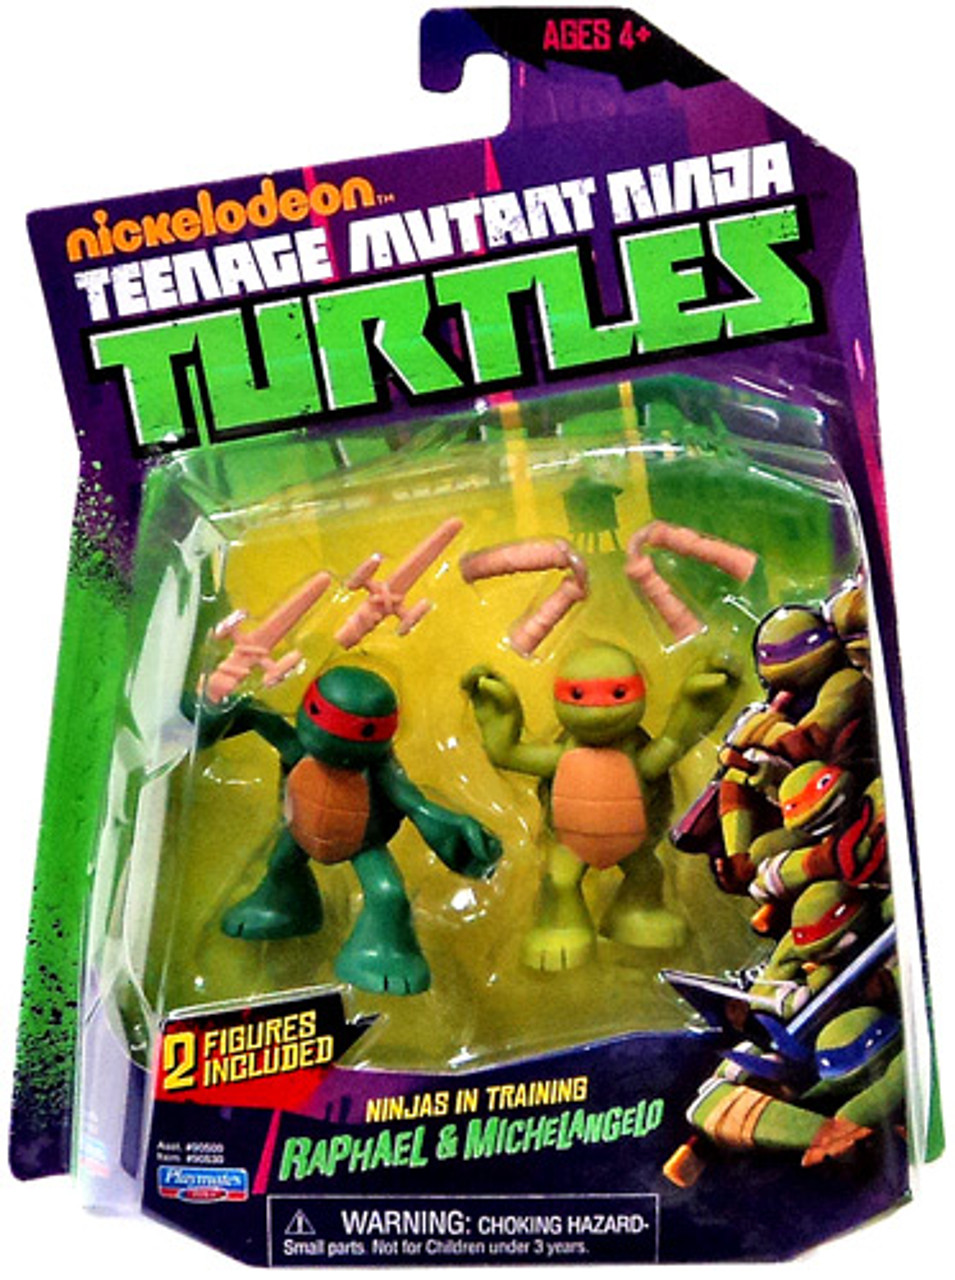 Teenage Mutant Ninja Turtles Nickelodeon Ninjas in Training Raphael ... - NickeloDeon Teenage Mutant Ninja Turtles Action Figure 2 Pack Ninjas In Training Raphael Michelangelo 8  27133.1461301806